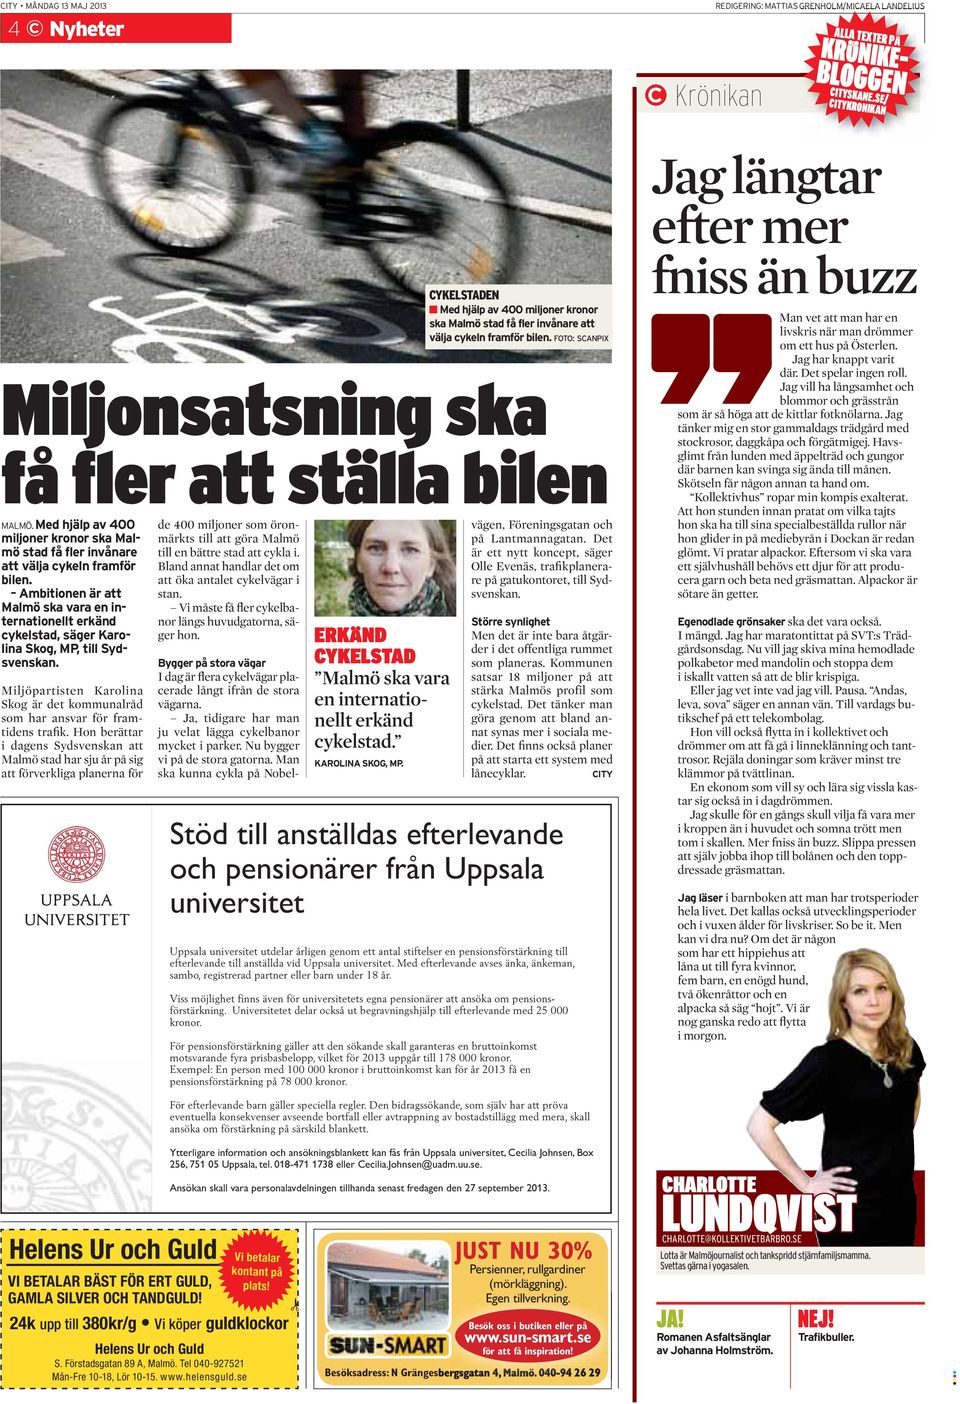 Ambitionen är att Malmö ska vara en internationellt erkänd cykelstad, säger Karolina Skog, MP, till Sydsvenskan. Miljöpartisten Karolina Skog är det kommunalråd som har ansvar för framtidens trafik.